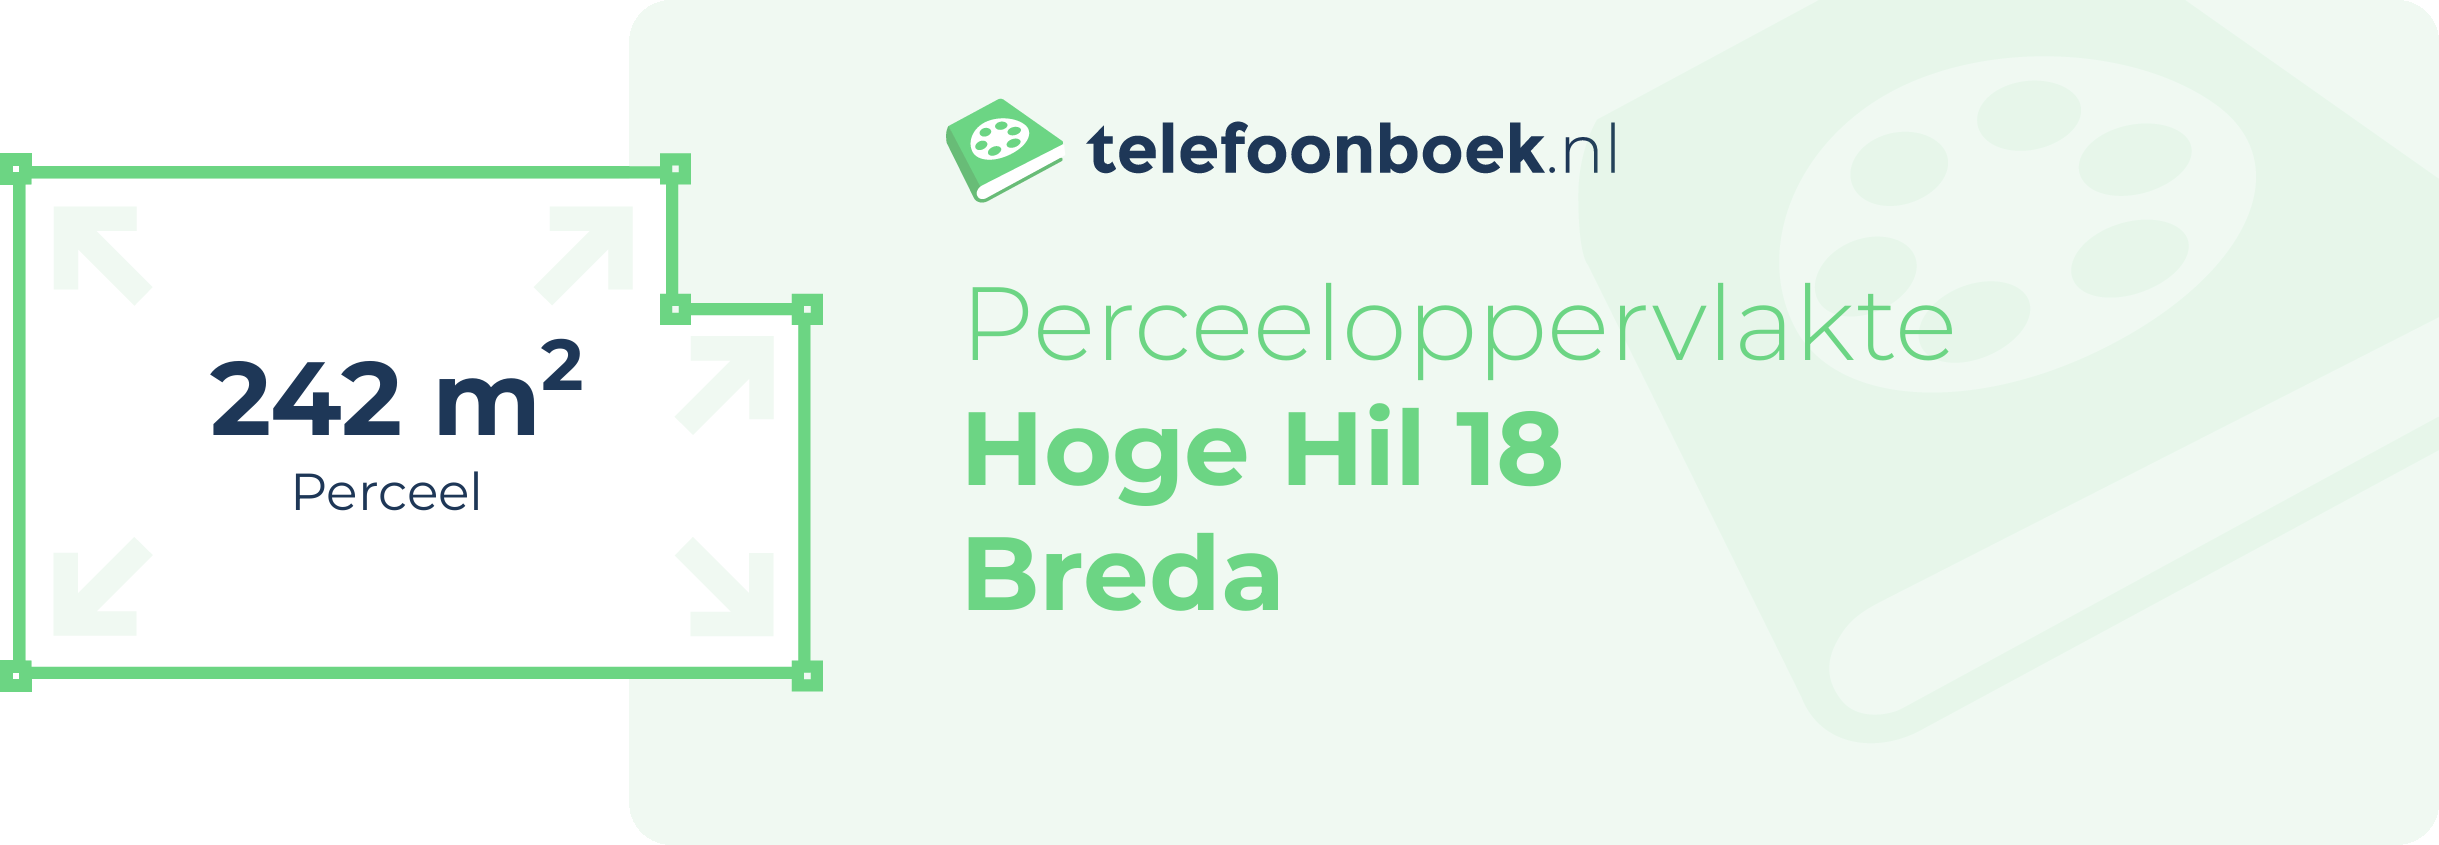 Perceeloppervlakte Hoge Hil 18 Breda